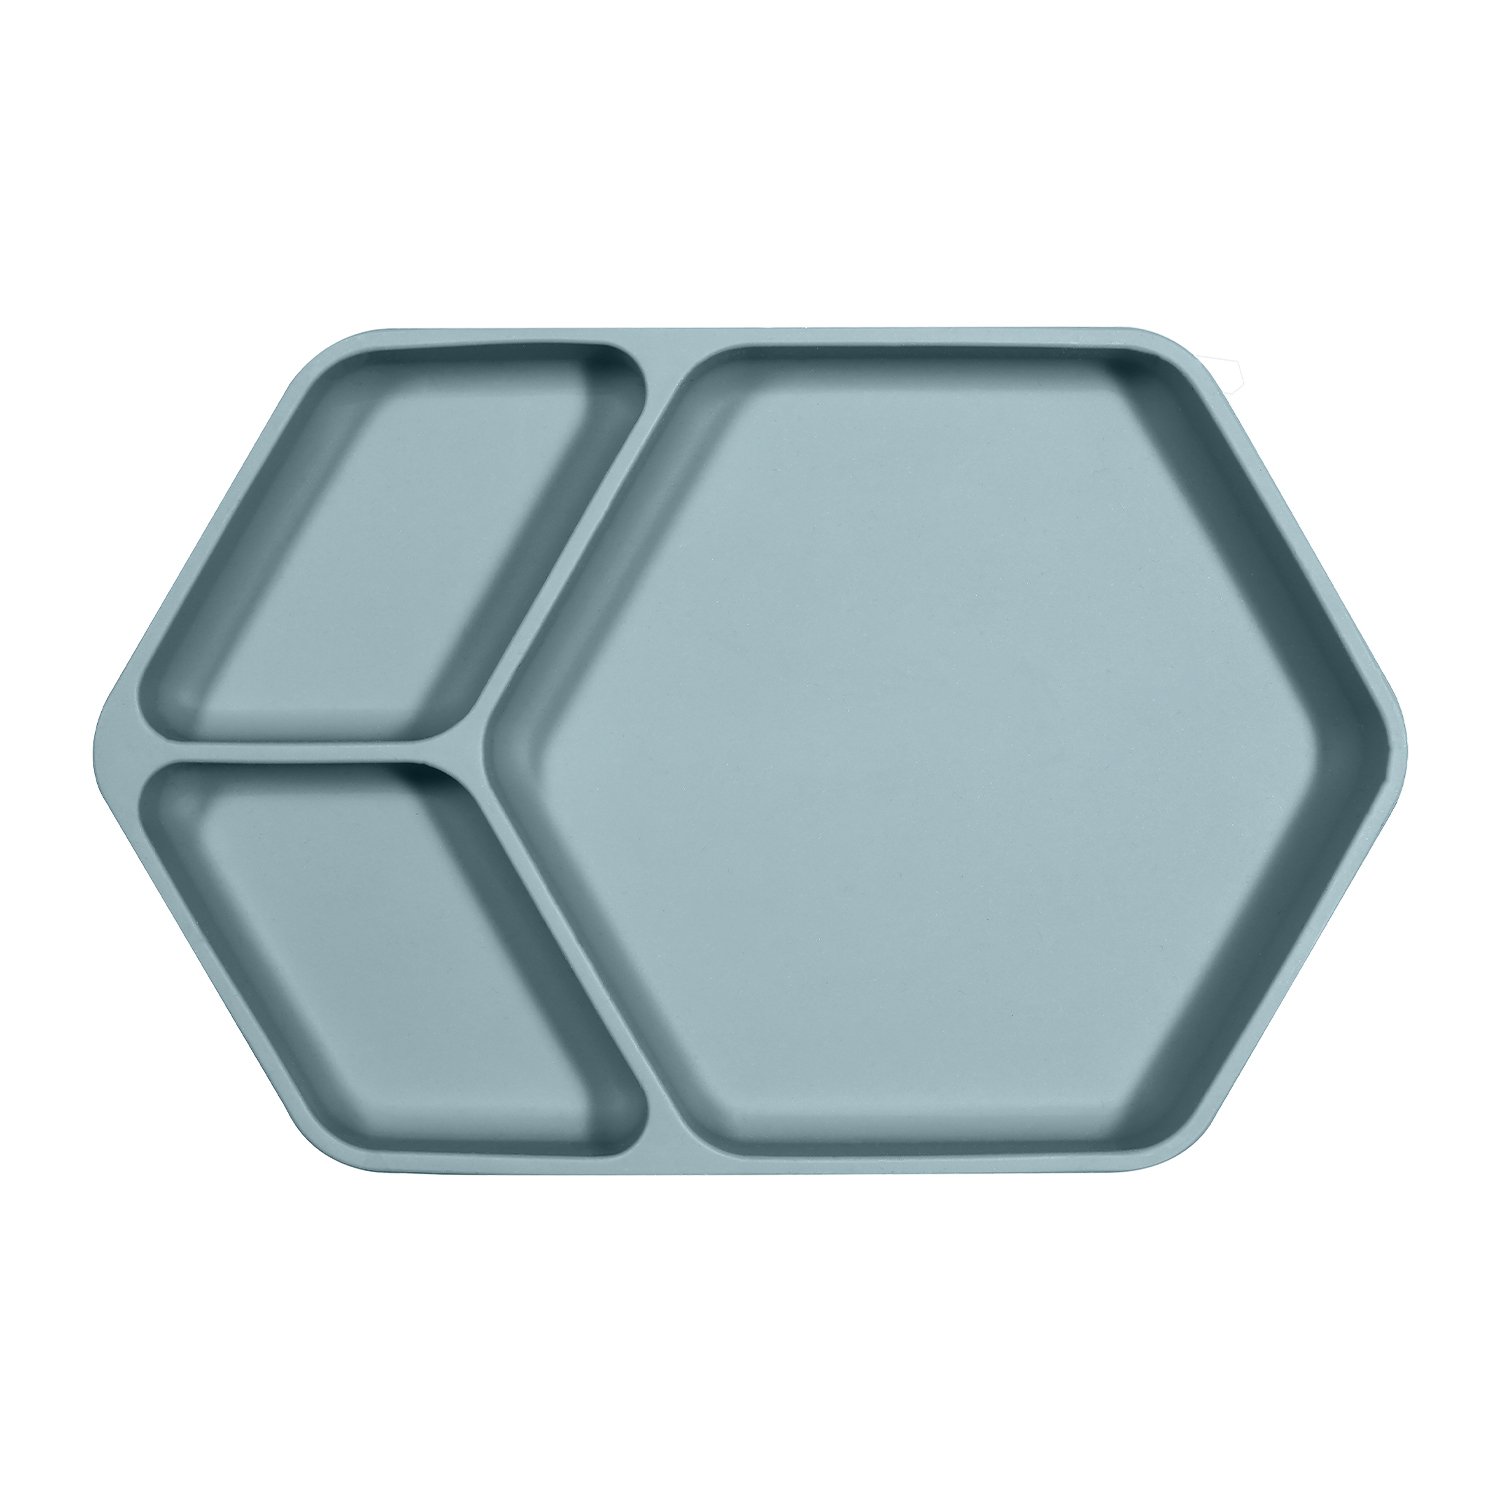 Assiette ventouse carré en silicone (Kindsgut) - Image 1